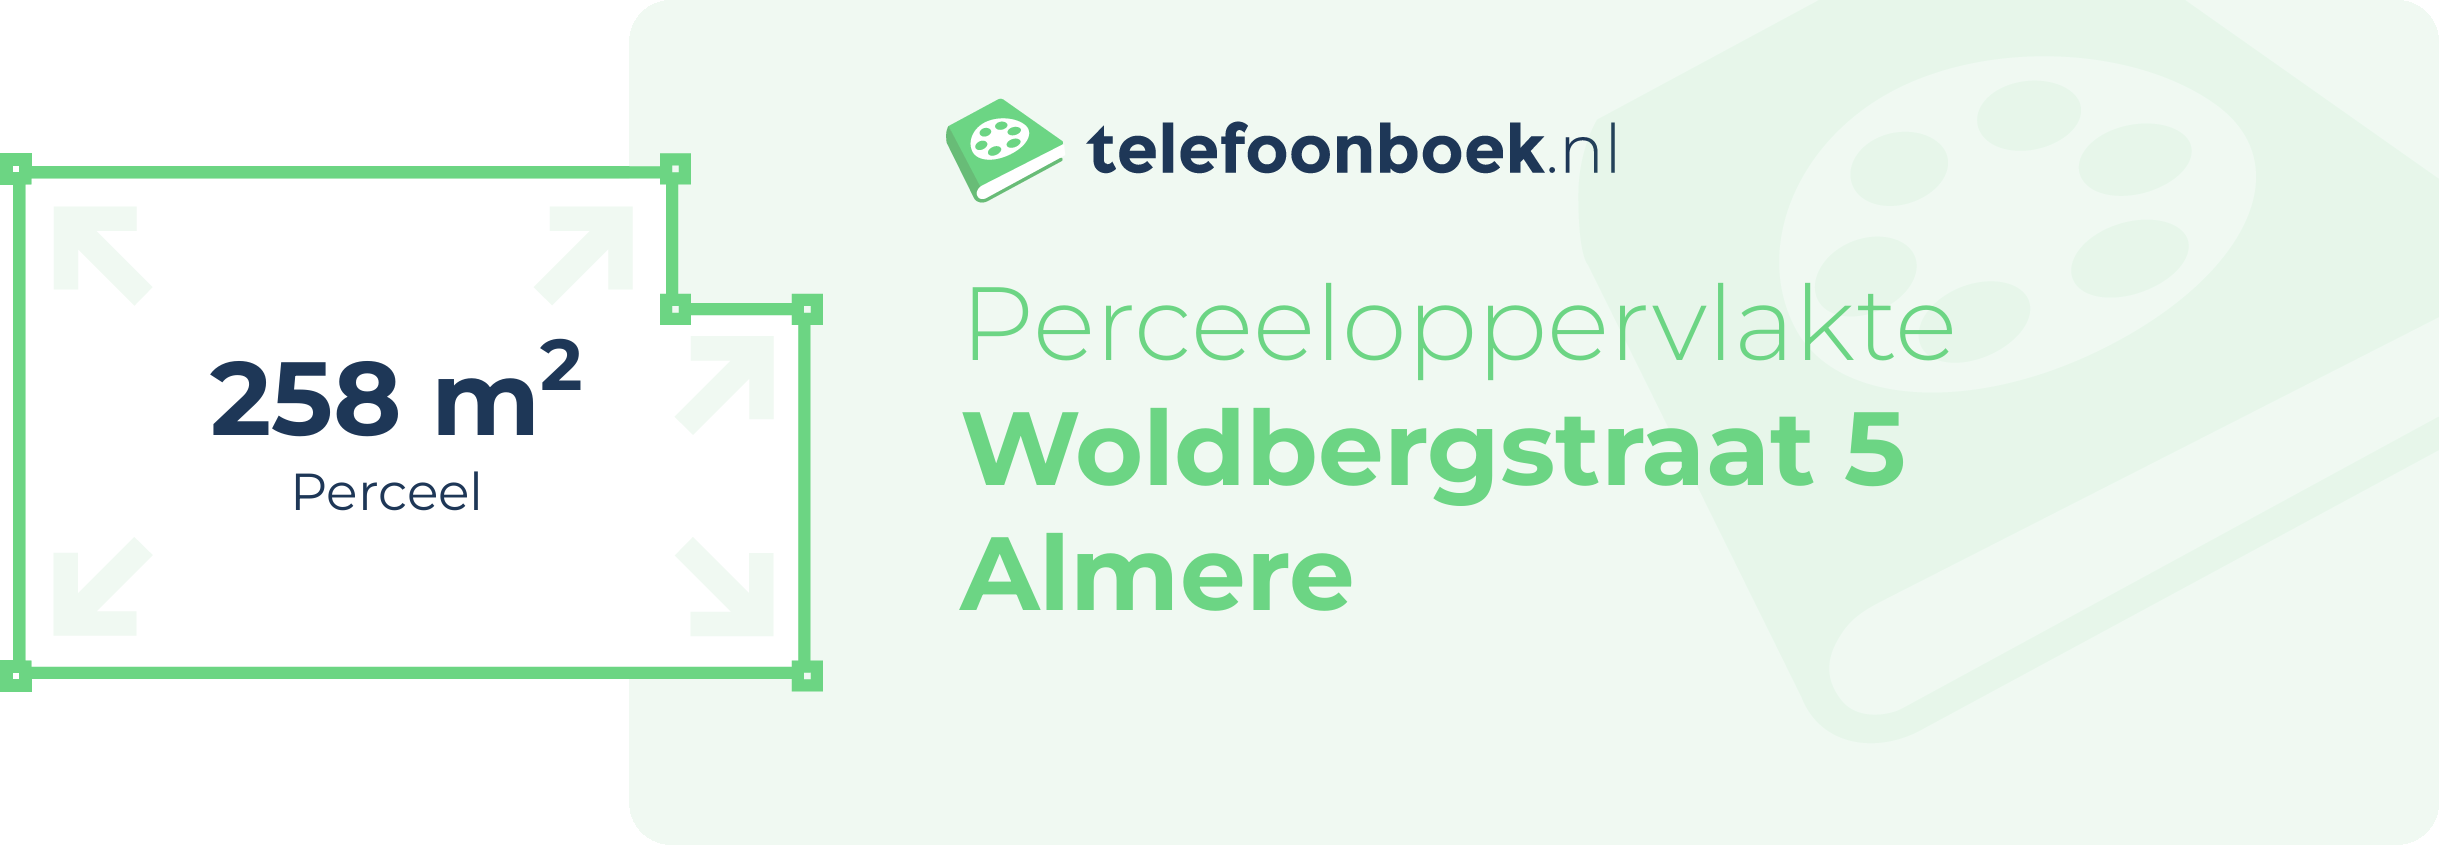 Perceeloppervlakte Woldbergstraat 5 Almere